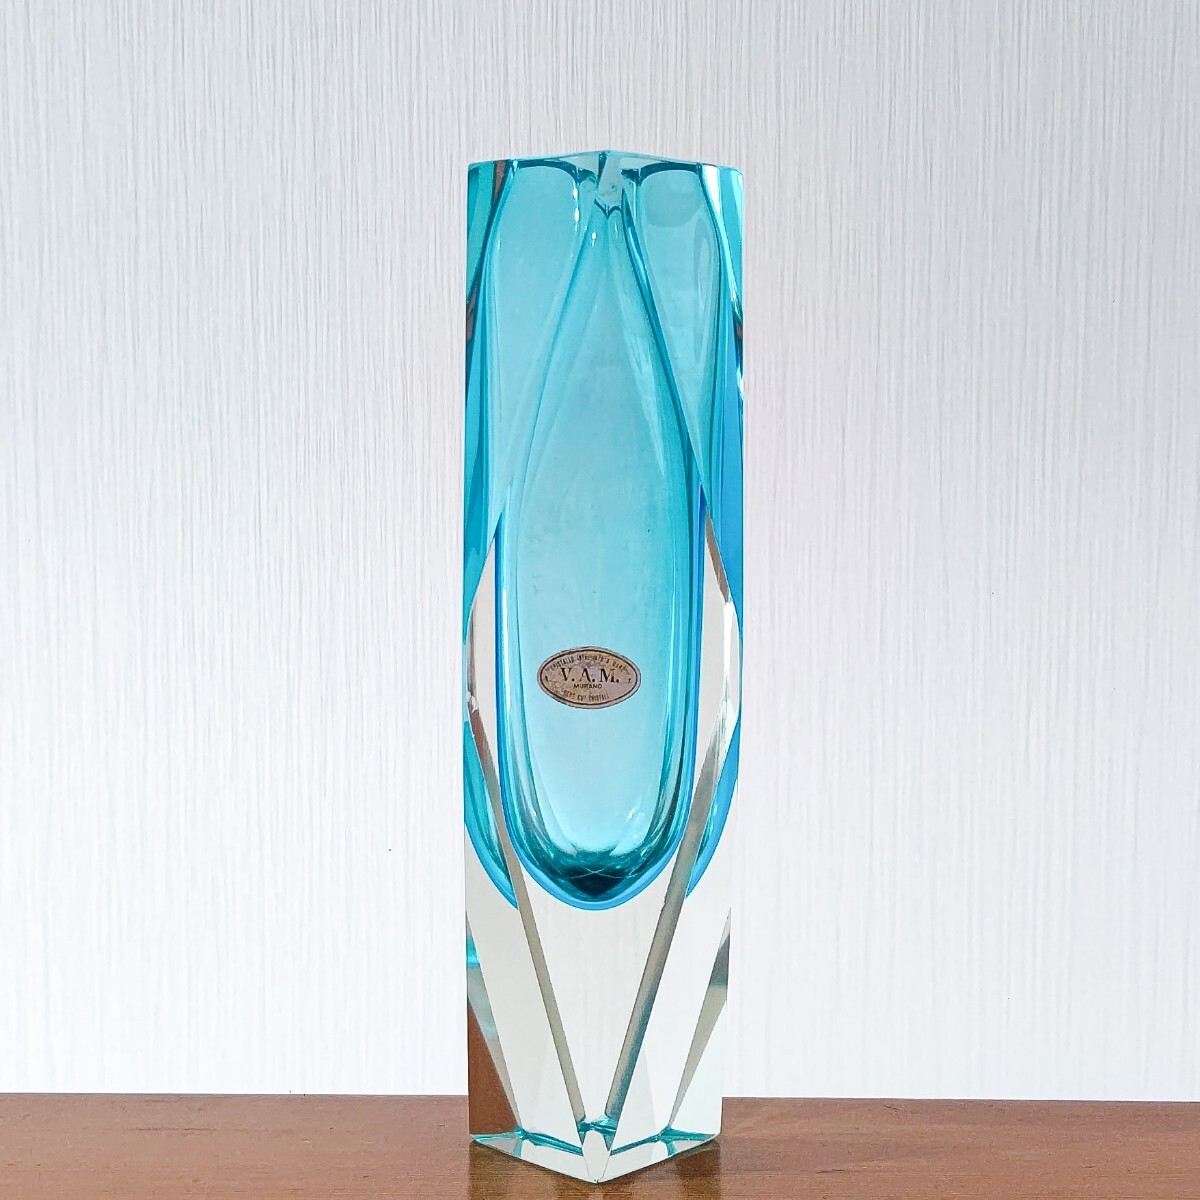  Италия производства V.A.M. венецианский стакан MURANO Murano стекло цветок основа ваза retro Vintage venechi Anne б/у бесплатная доставка быстрое решение 